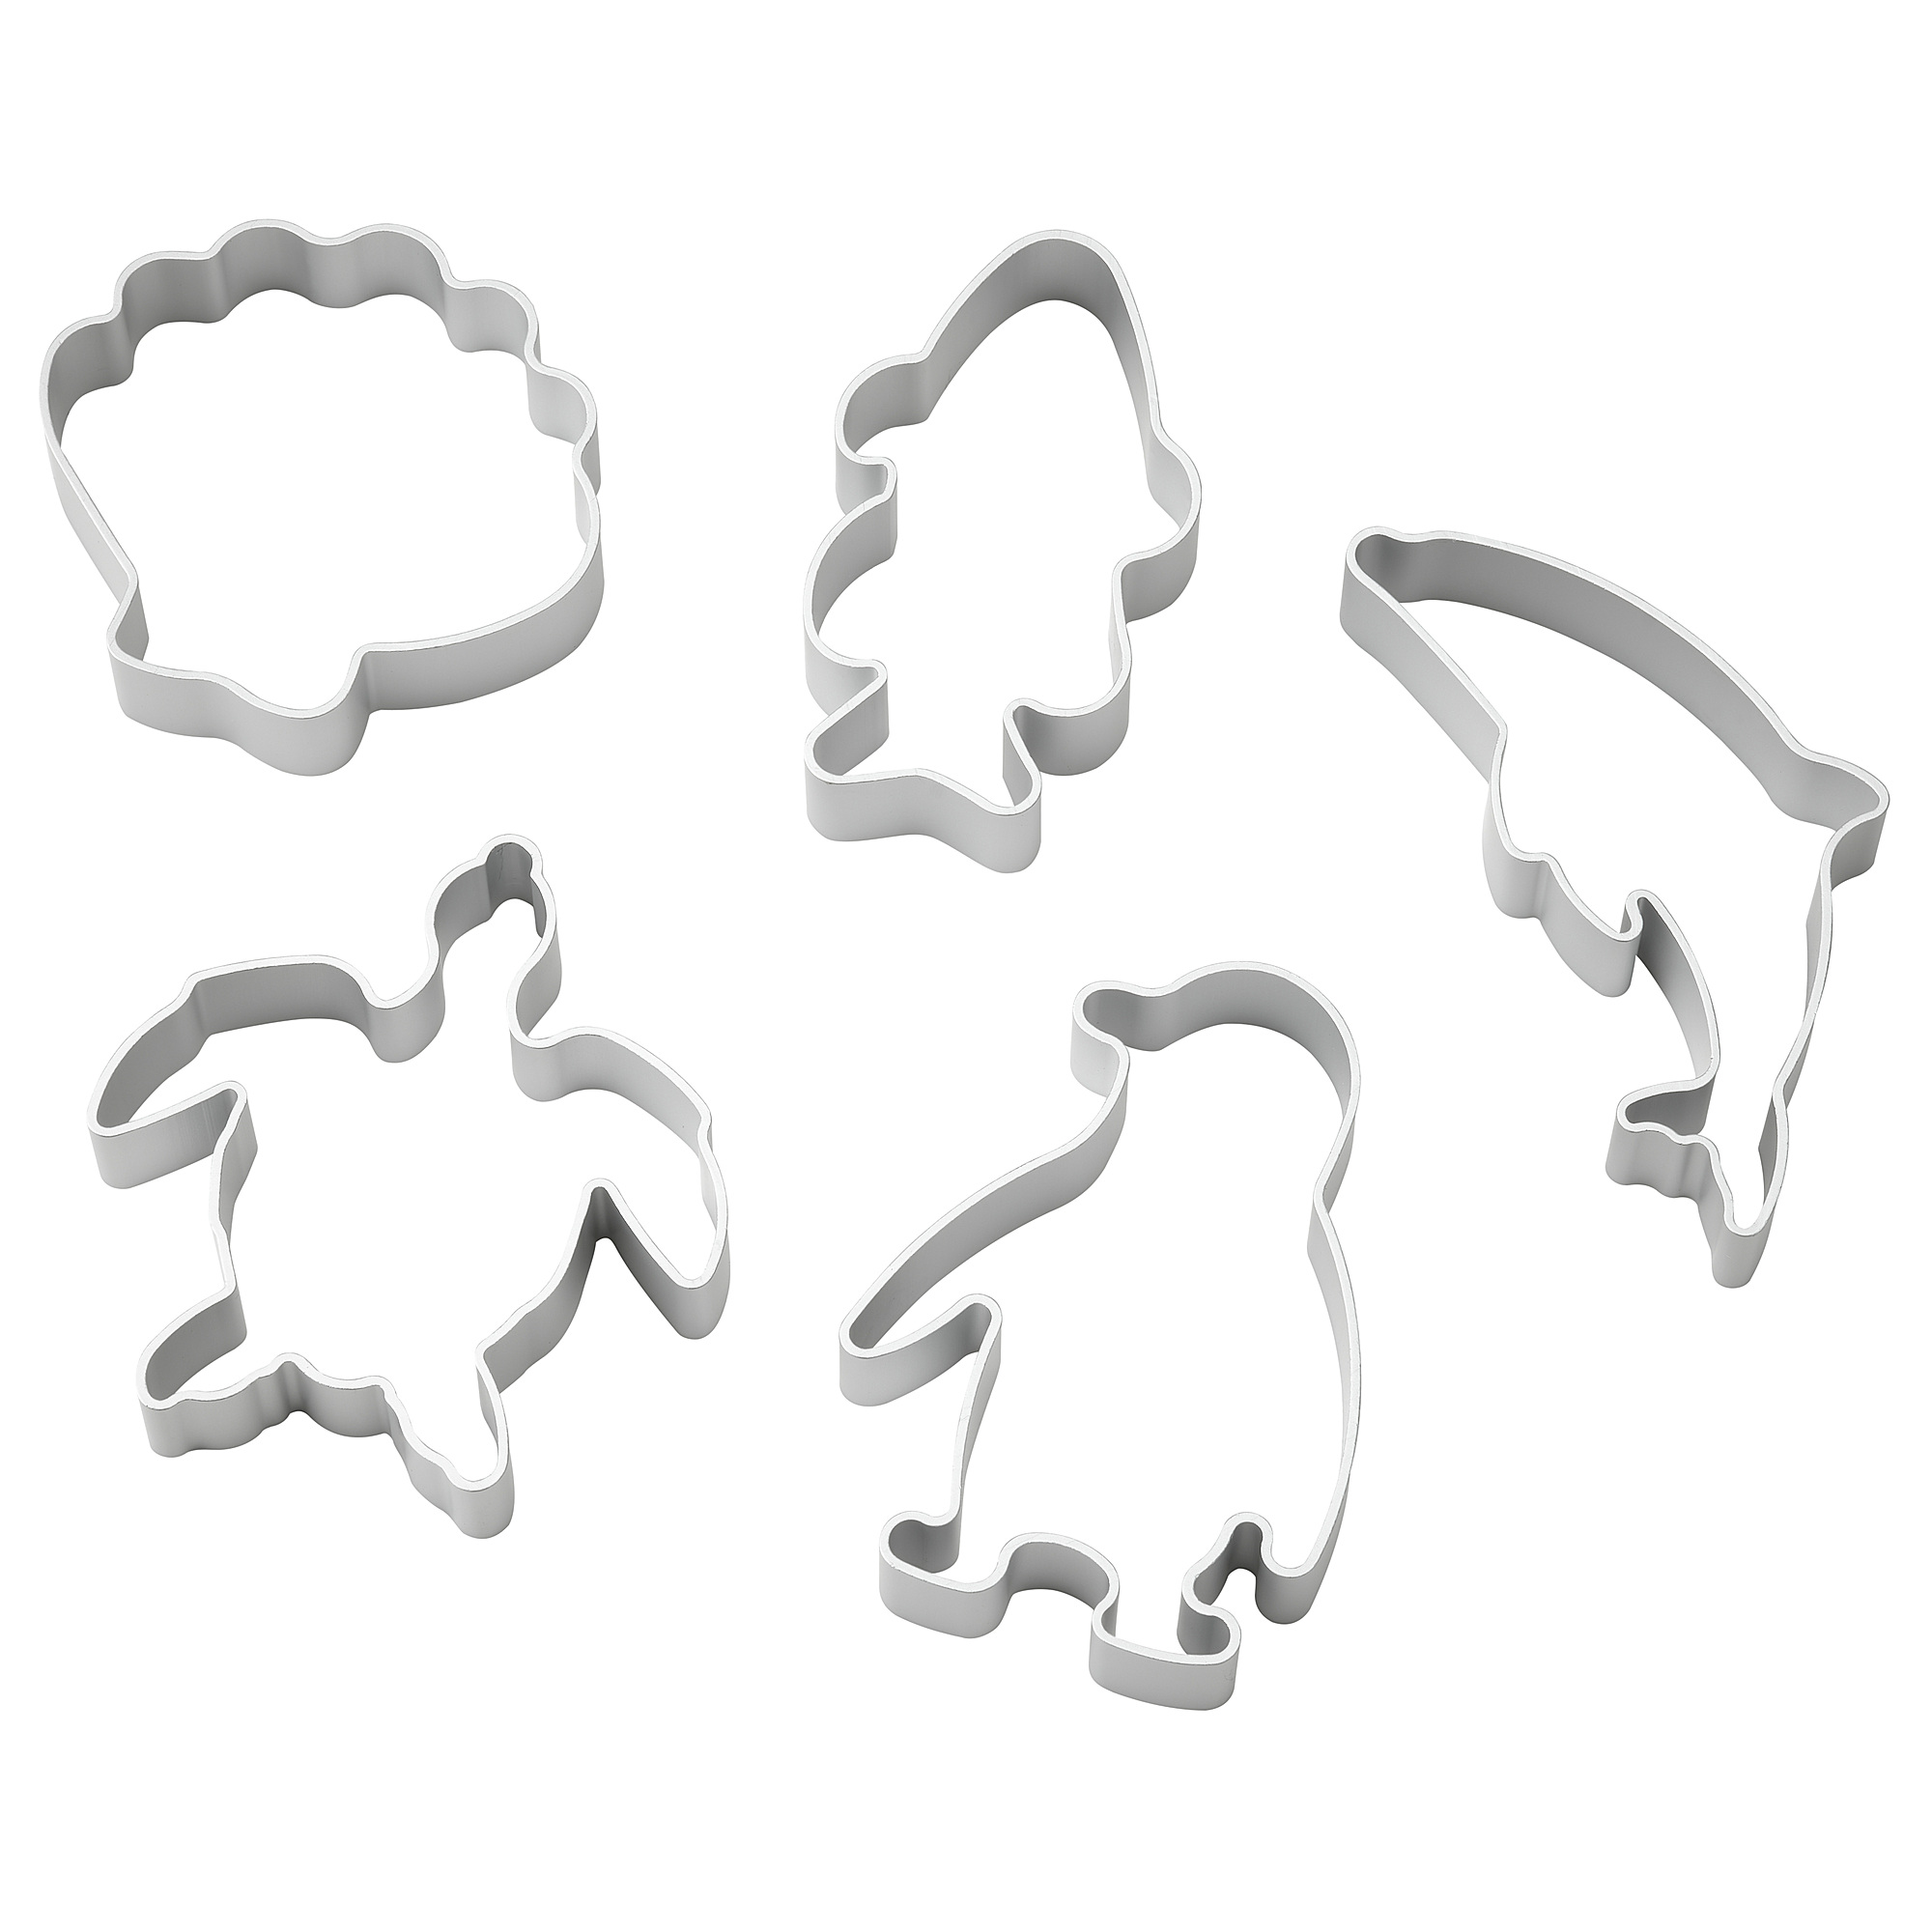 BLÅVINGAD modelling dough cutters, set of 5